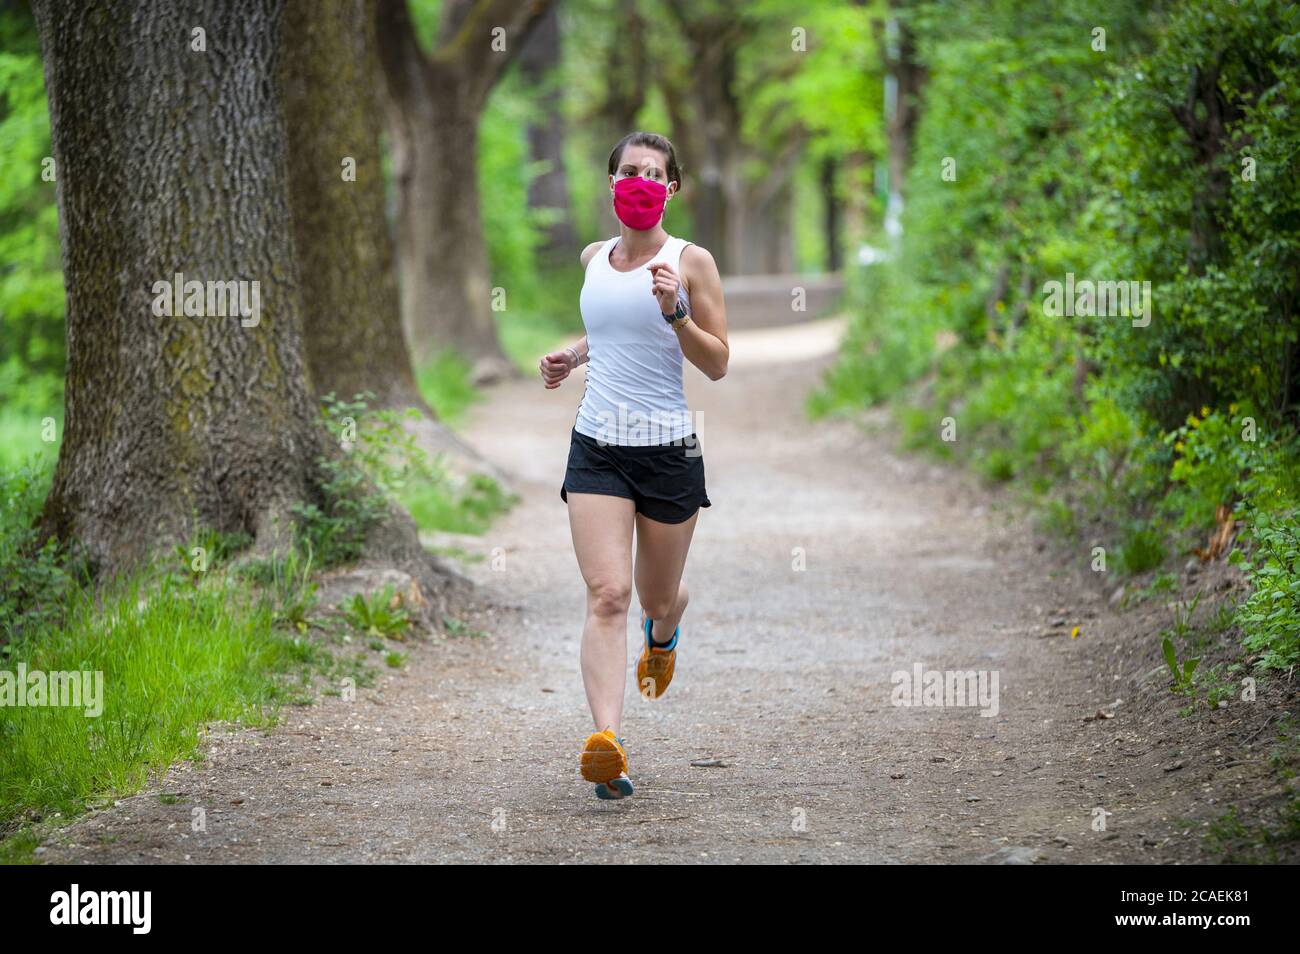 Mantenersi in forma durante il Coronavirus. Una donna sportiva sta facendo jogging all'aperto, ha una maschera protettiva sul viso. In esecuzione nei giorni del Covid-19. Foto Stock